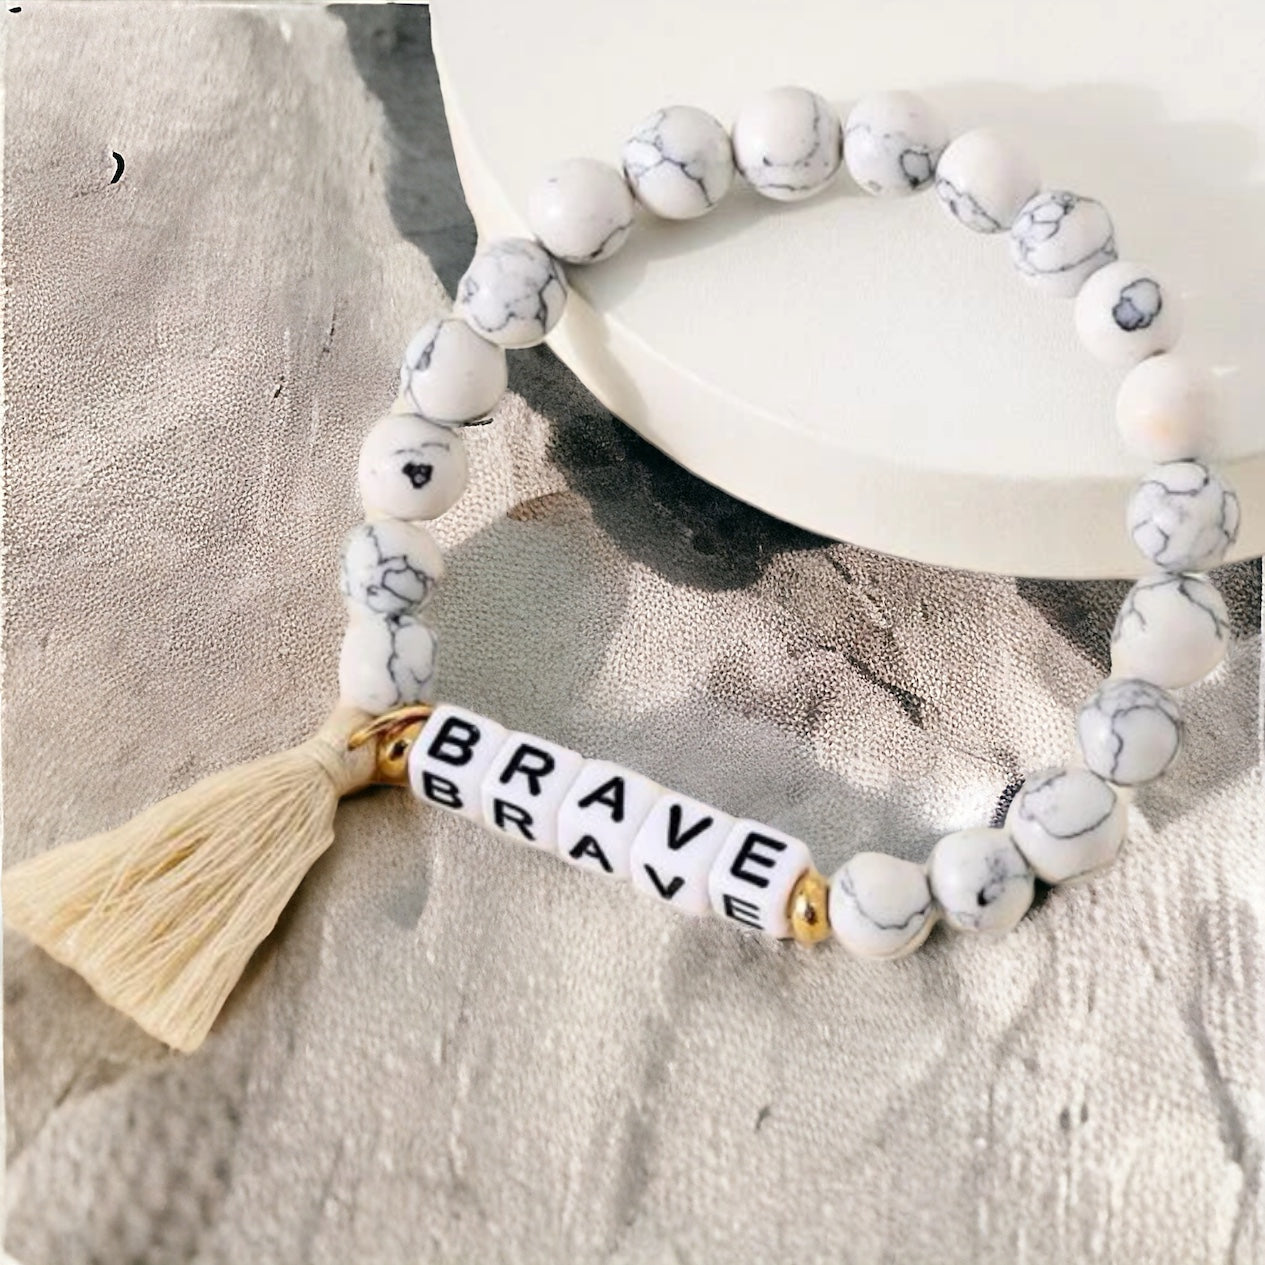 Brave Bracelet - Back to School, Friendship Bracelet, Bravery, Beaded Bracelet, Inspirational Gift,